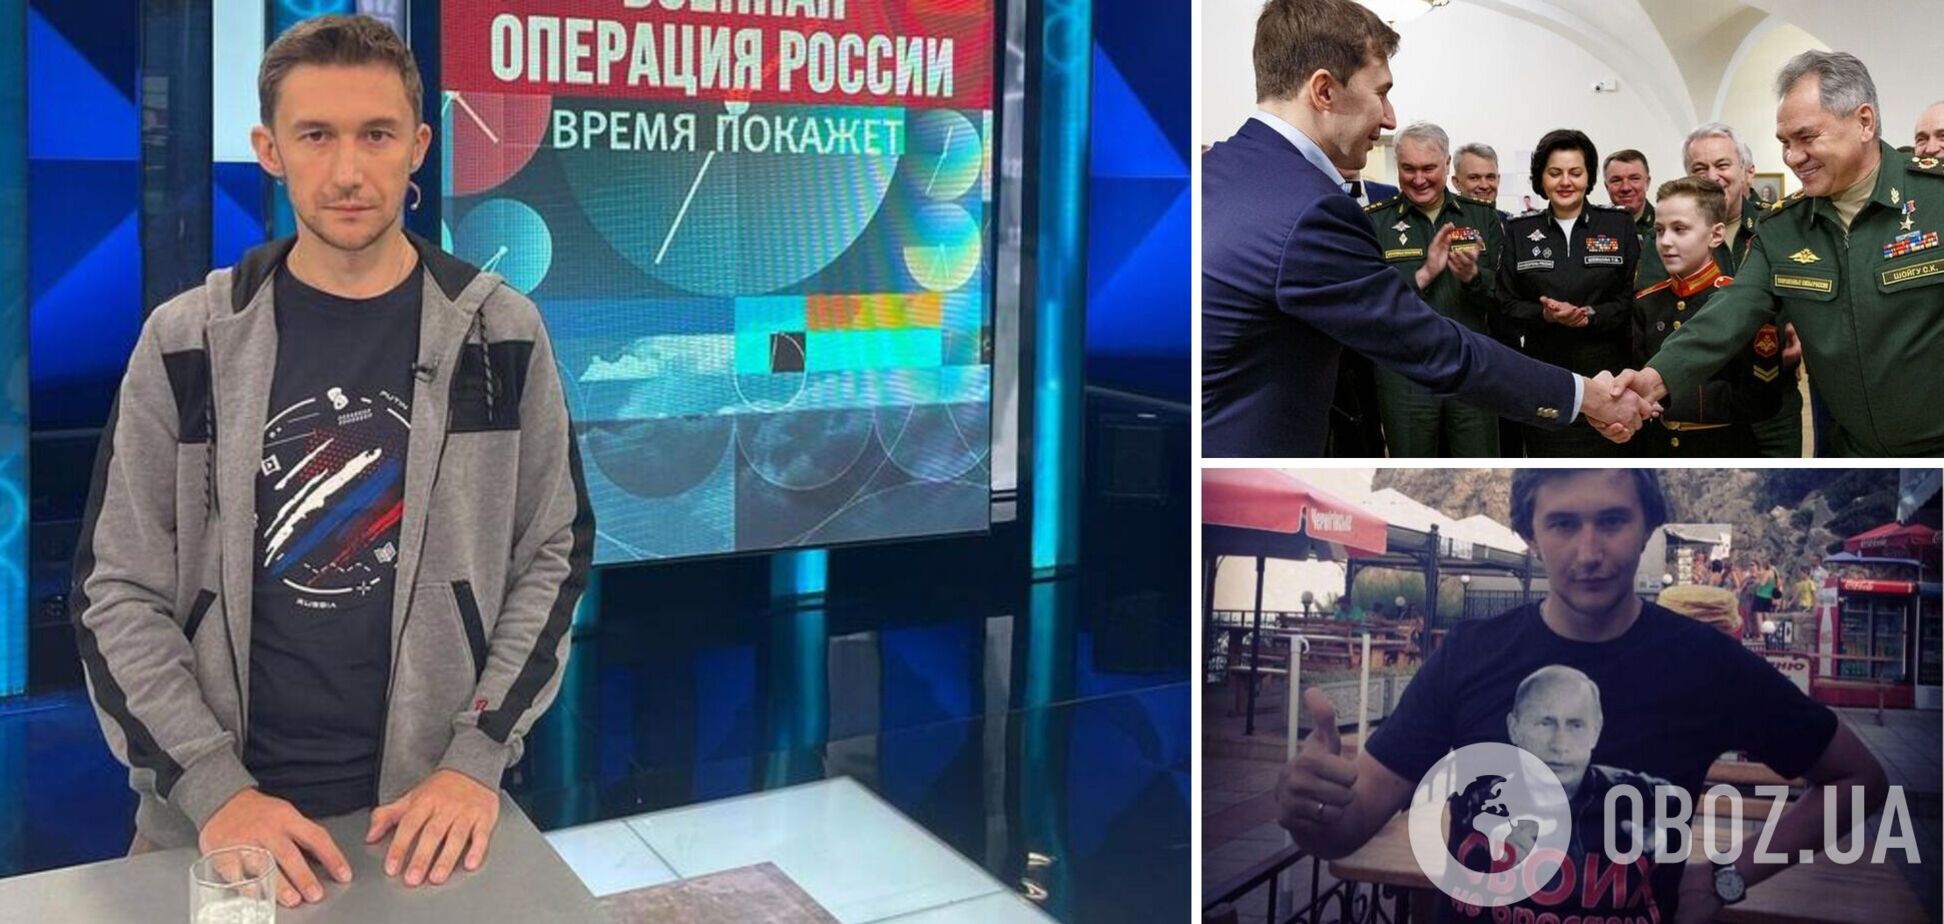 'Талантливый вундеркинд'. Украинский телеканал выпустил передачу о предателе Украины, ставшим Z-патриотом в России